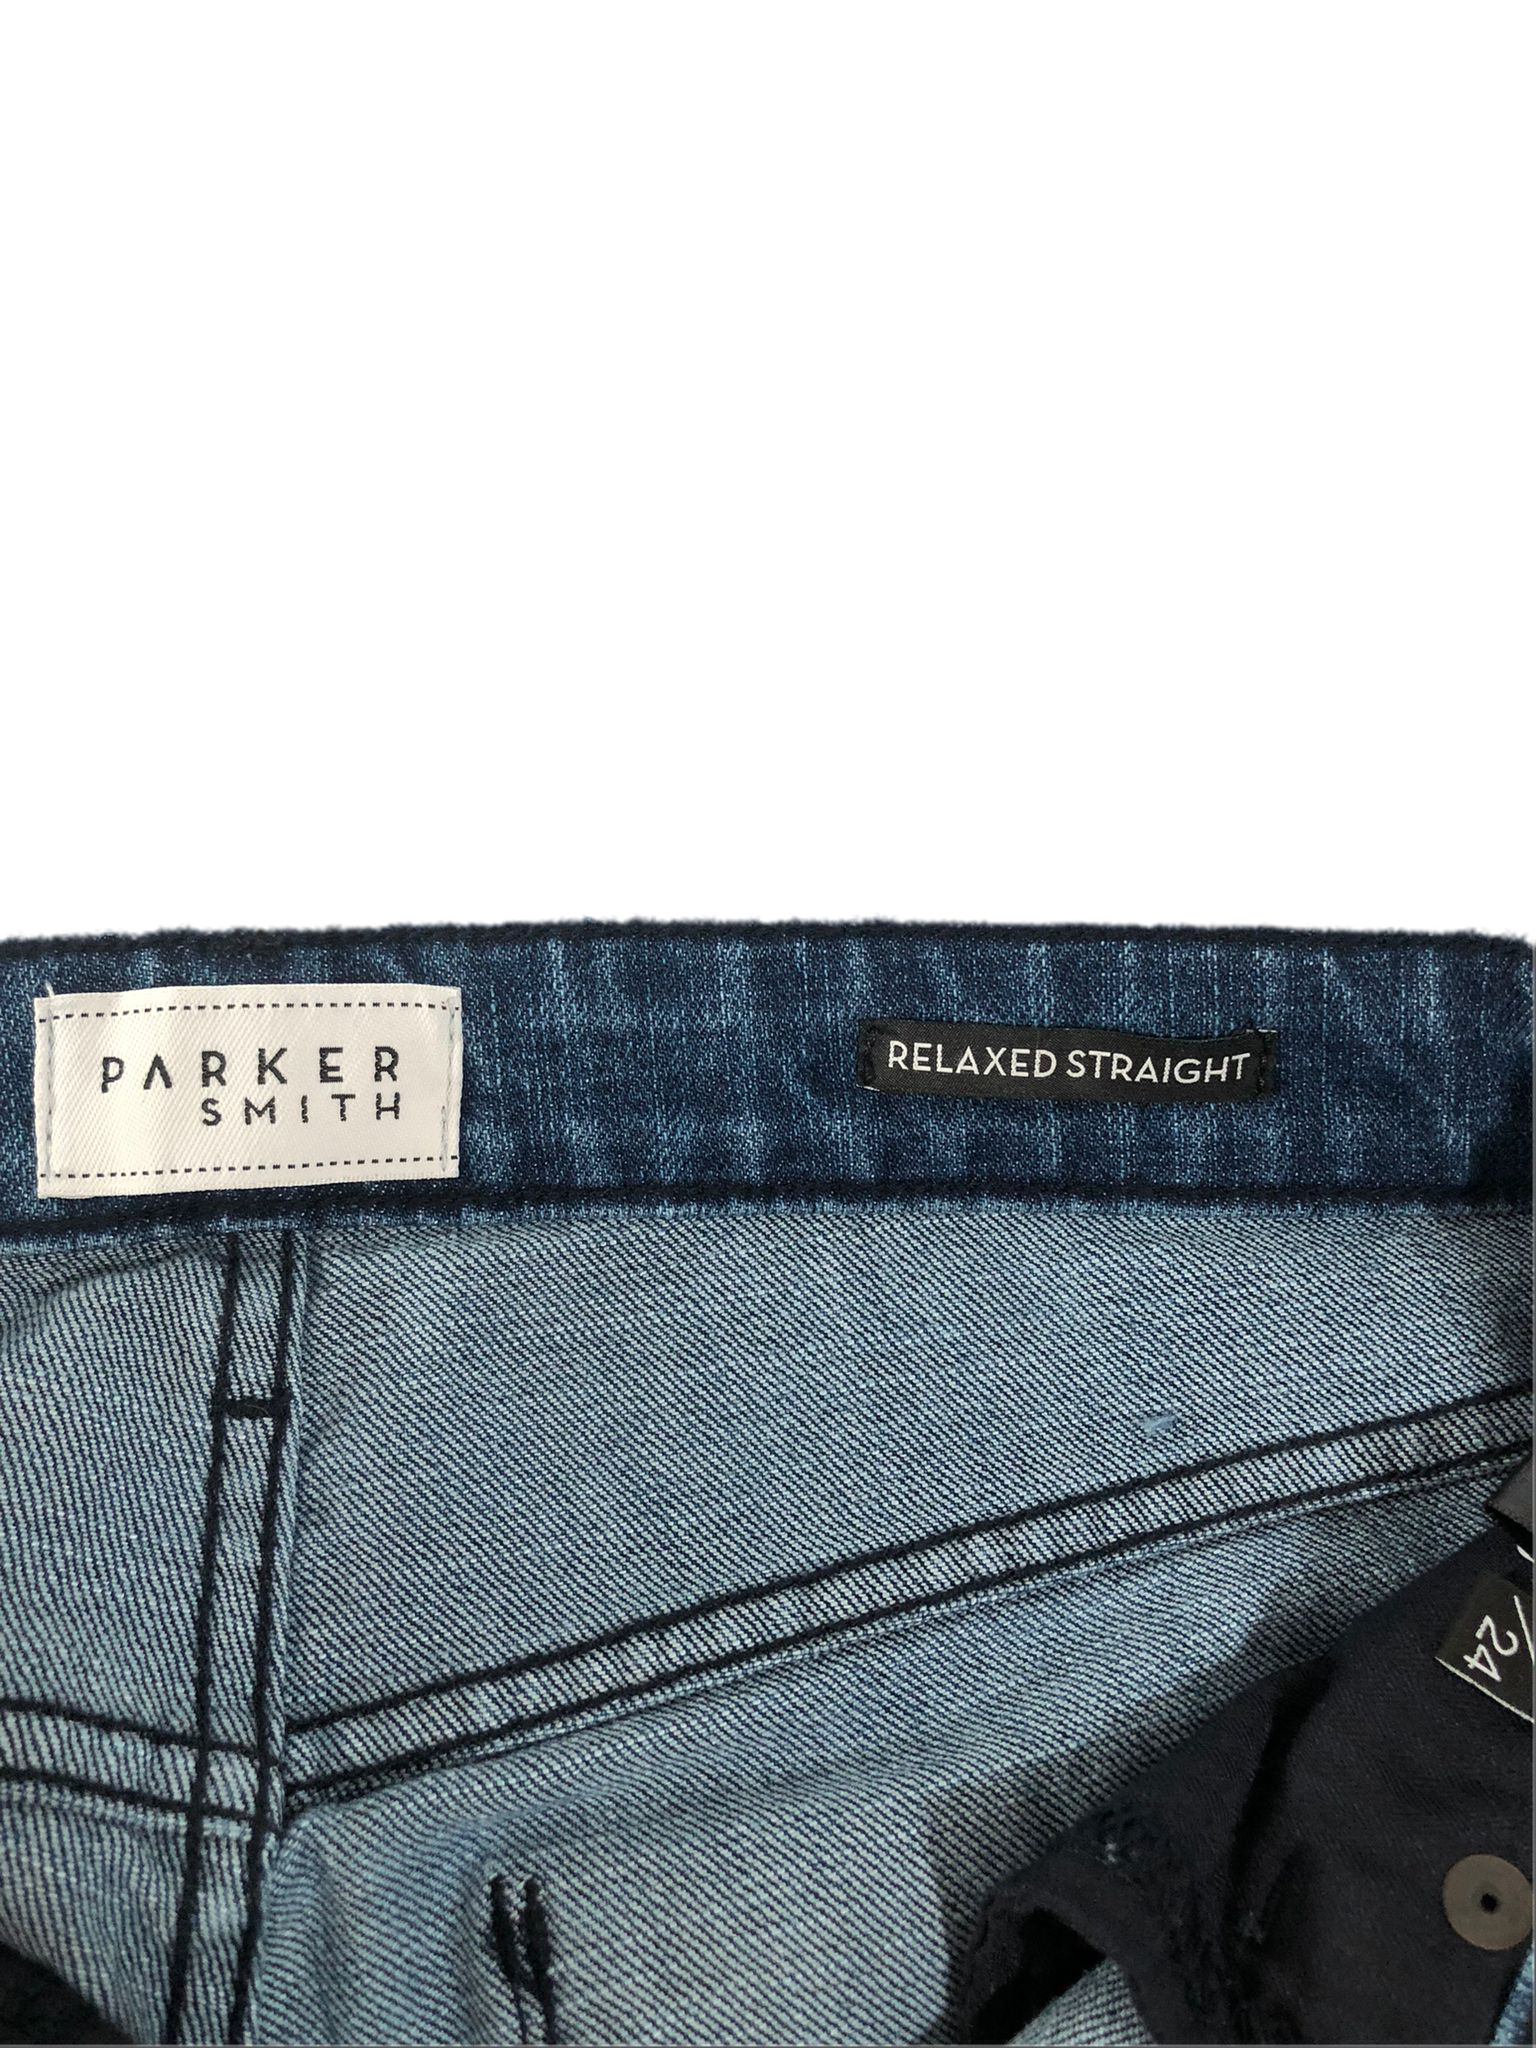 Parker Smith Women's Girlfriend Jeans